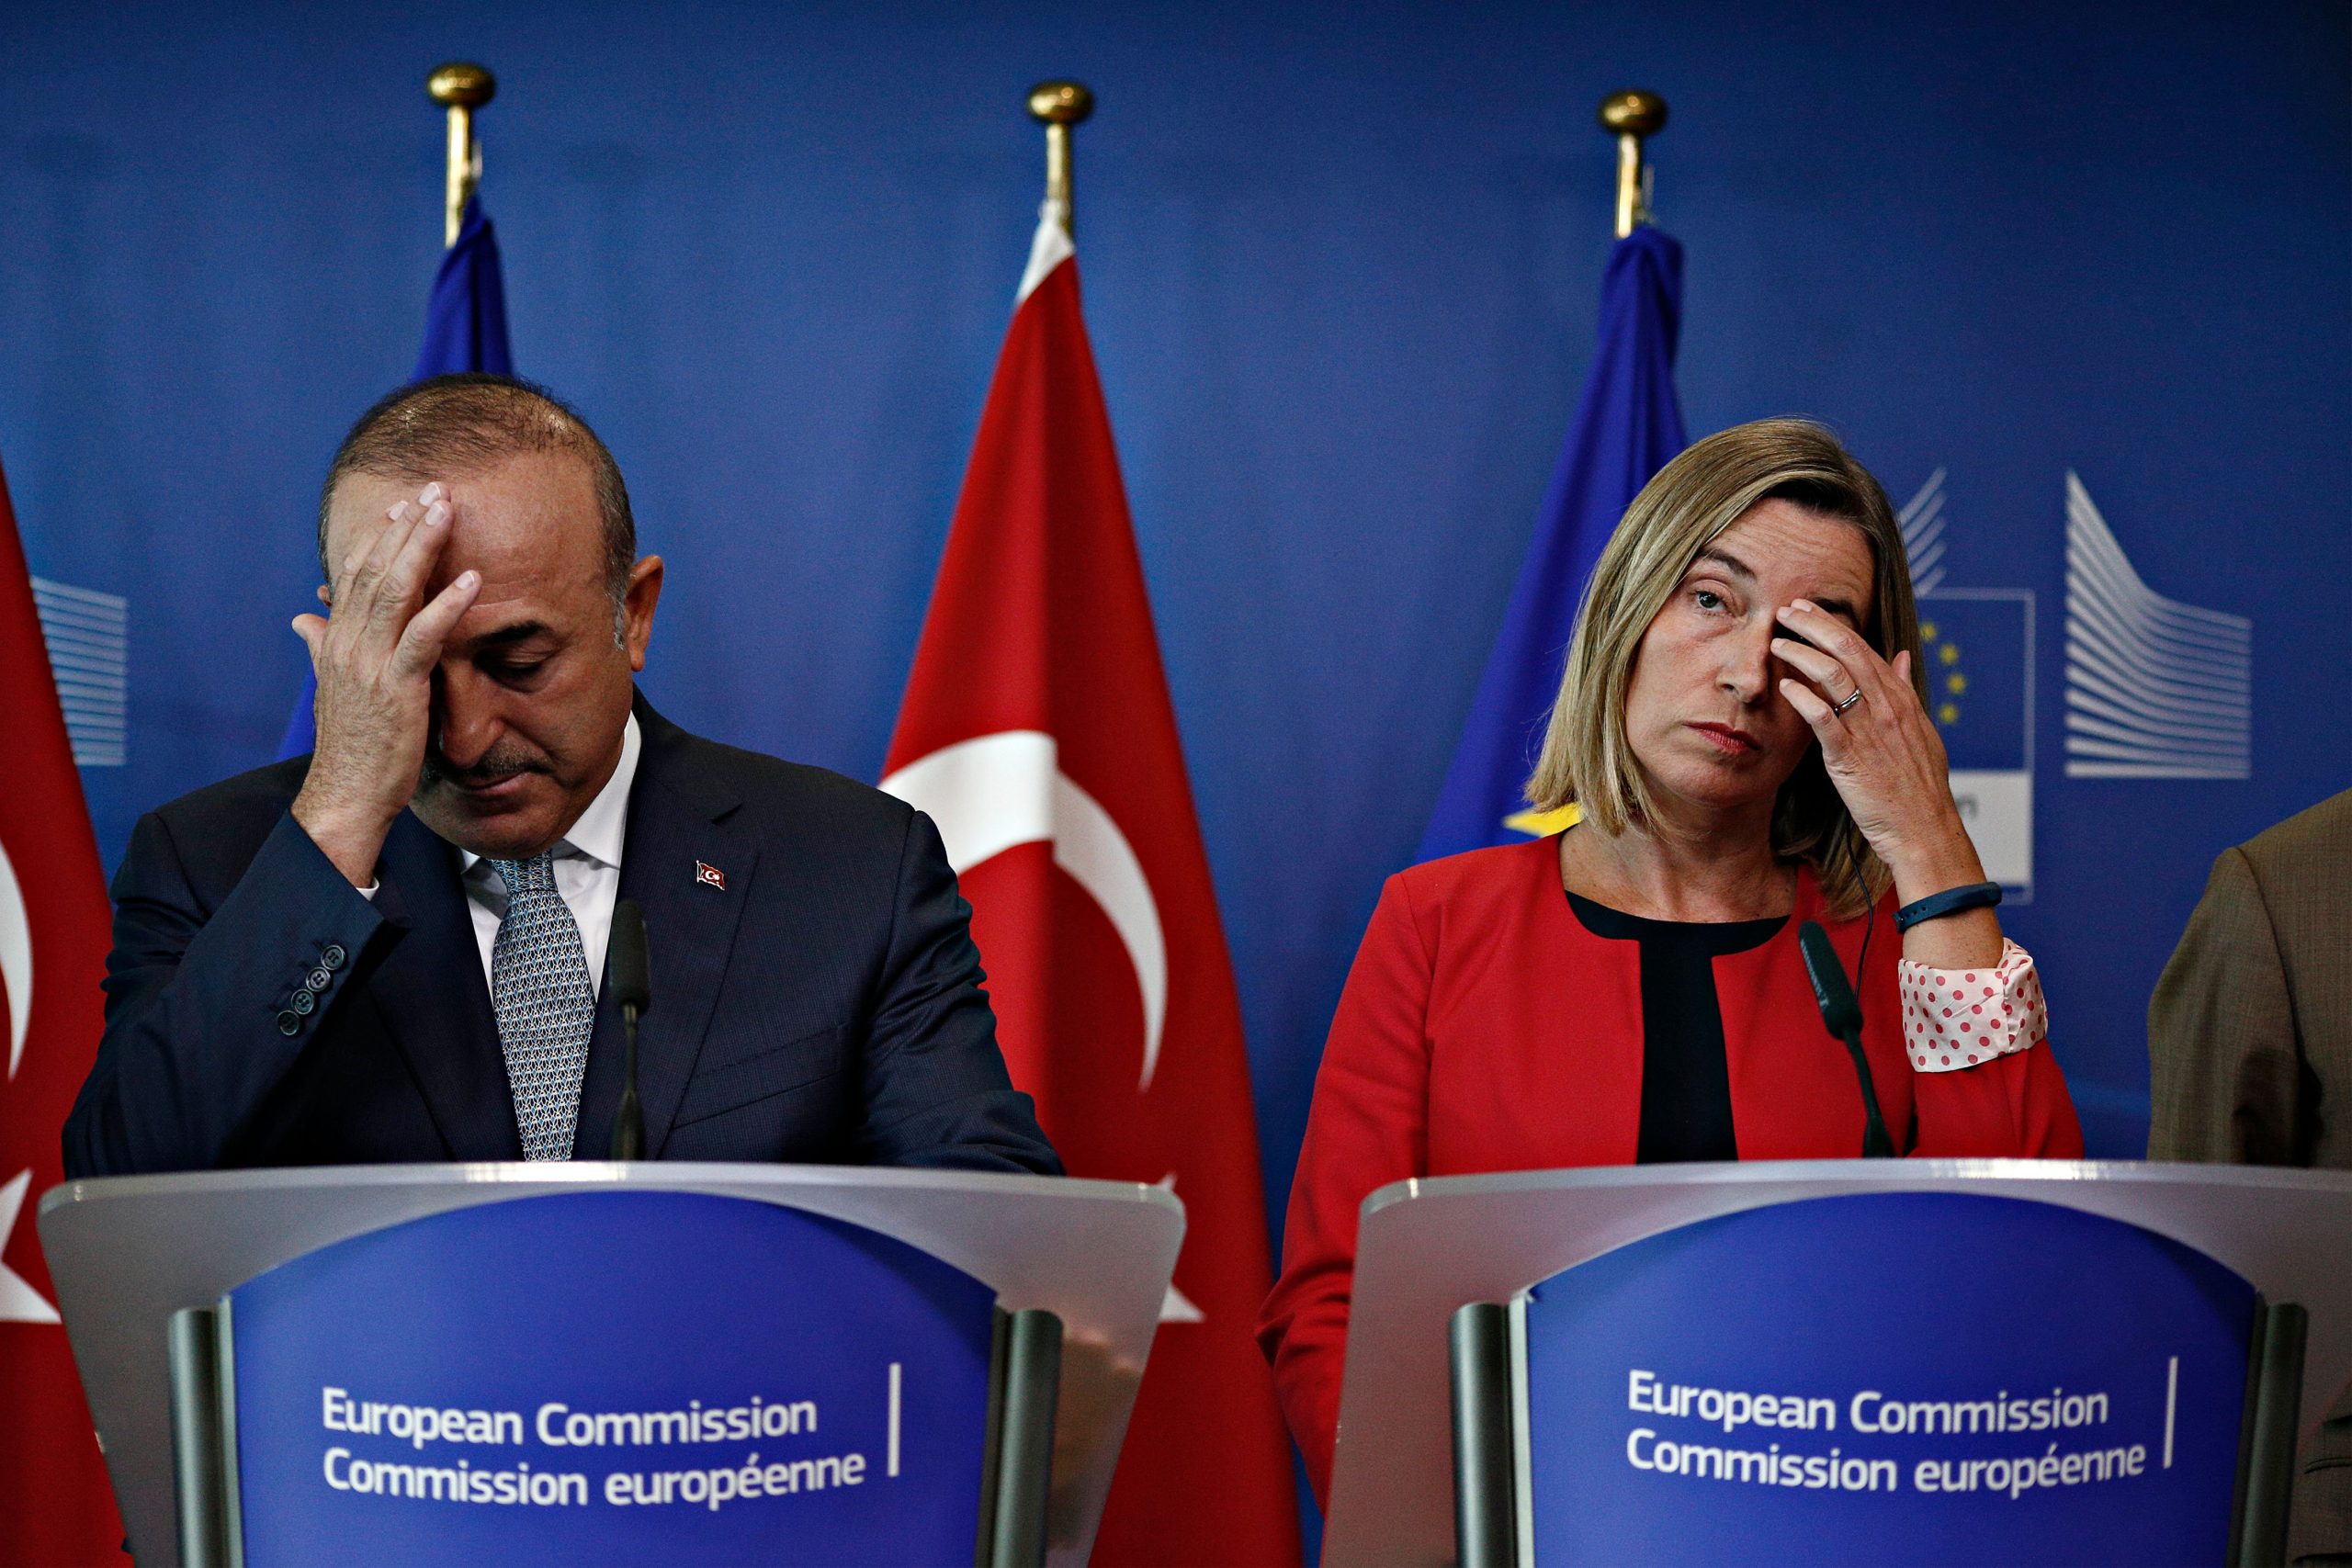 Κυρώσεις εξετάζει  η ΕΕ κατά της Τουρκίας: Αναστολή  των ενταξιακών διαπραγματεύσεων που έχουν ήδη… ανασταλεί! (βίντεο)